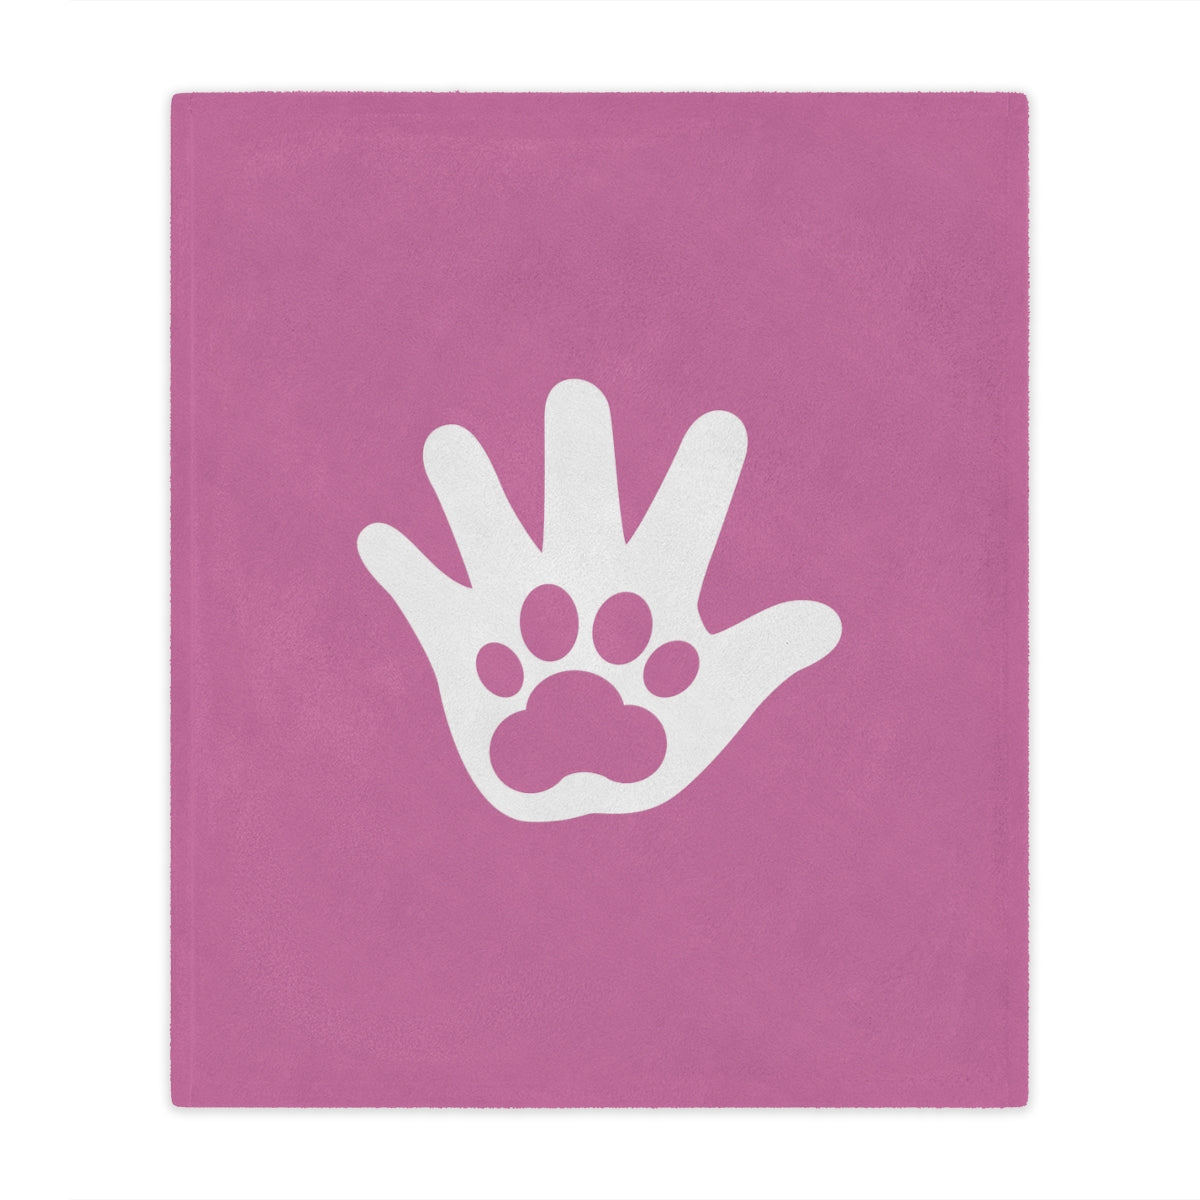 Paw n' Hand Minky Blanket - Rose Pink